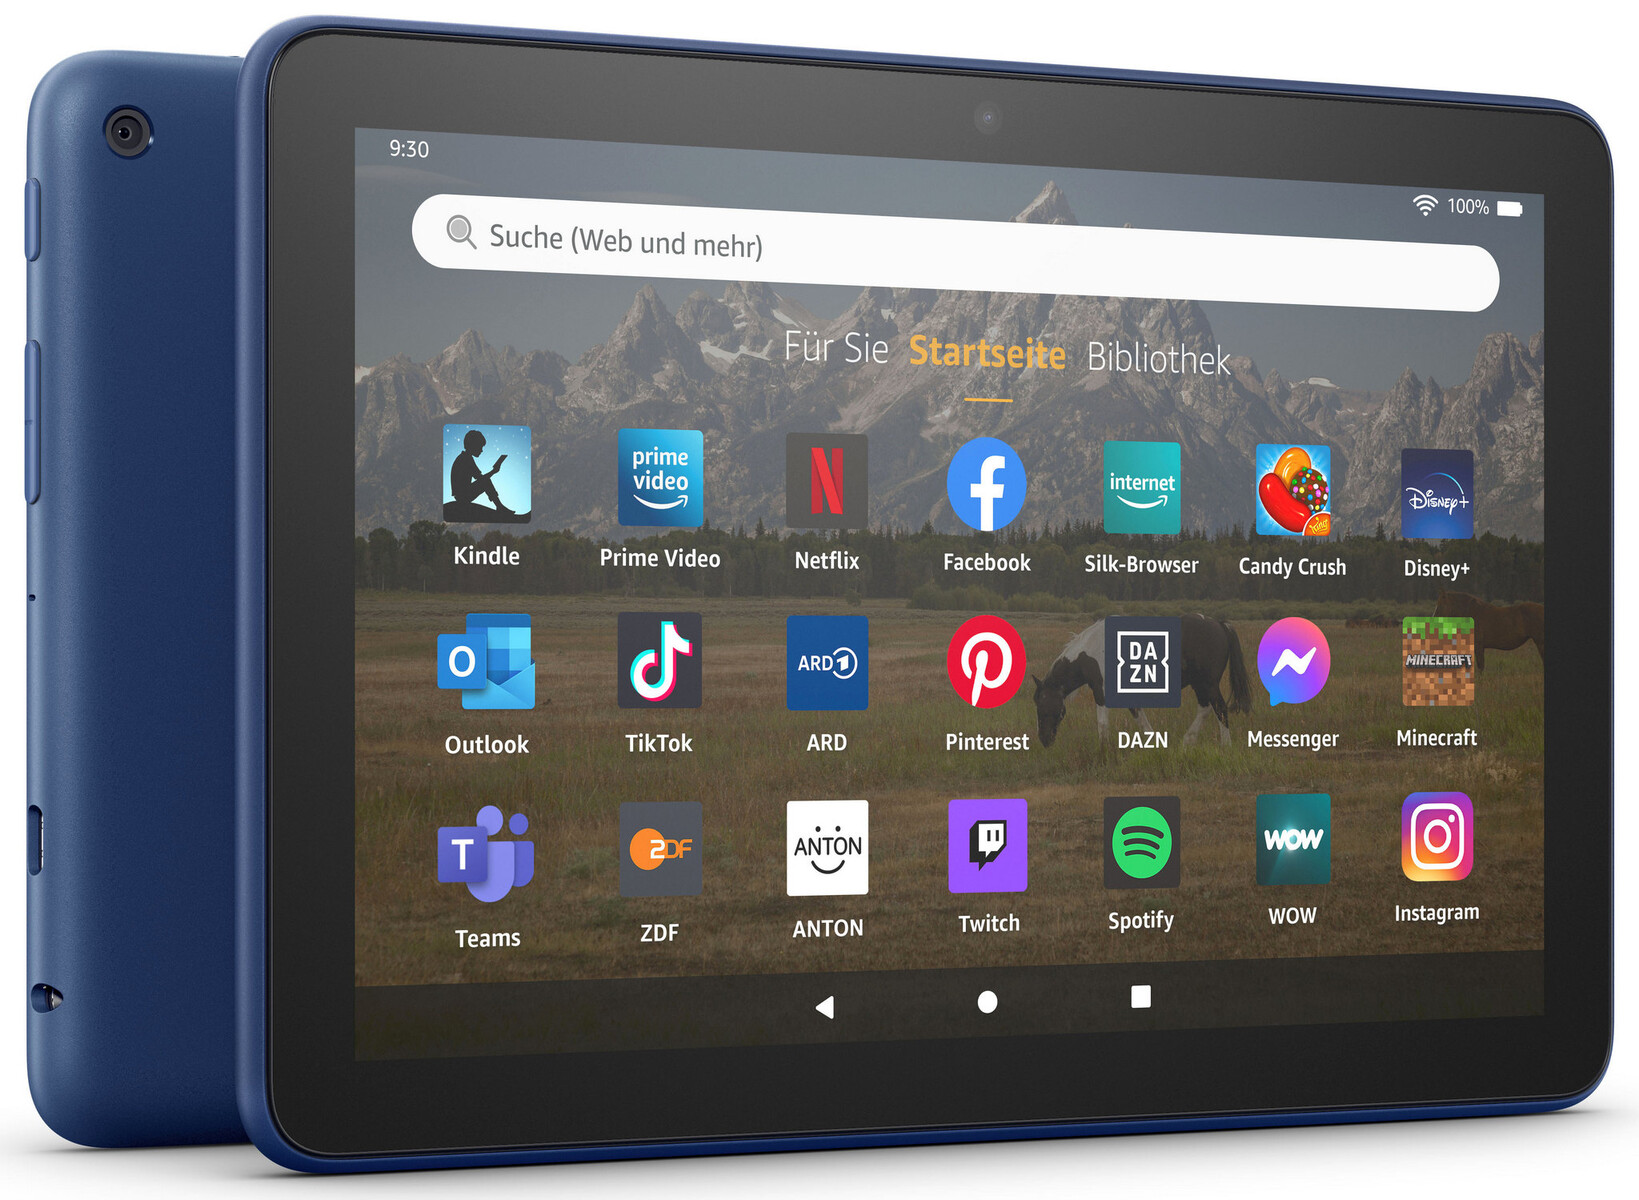 Lire en anglais : 800 ebook gratuits sur ton iPad, Kindle - Geek